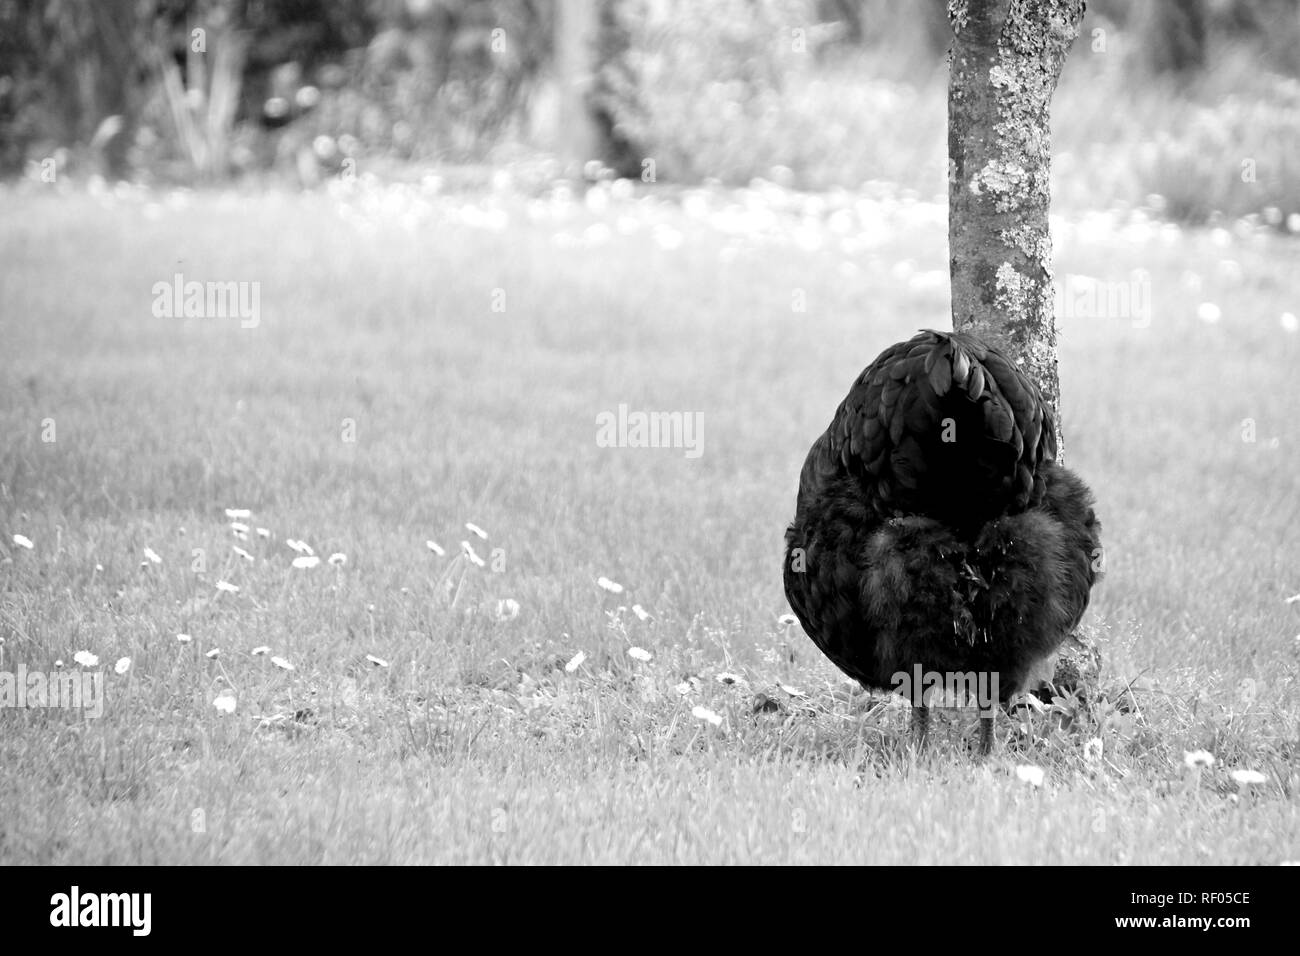 Poule au grand air dans un jardin. Photo en noir et blanc. Stock Photo